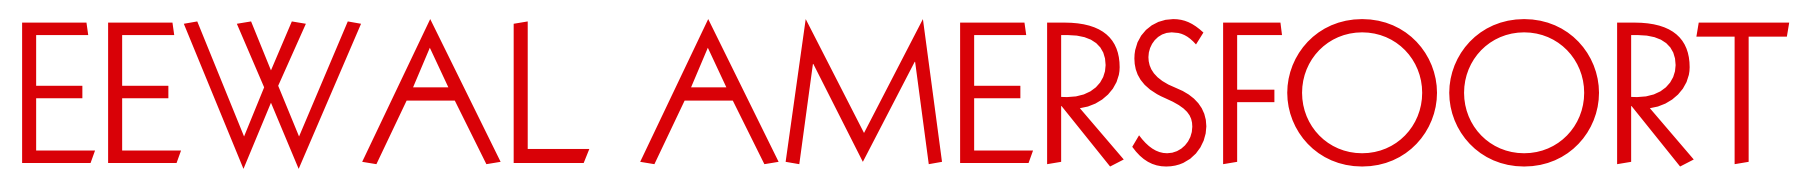 galerie eewal amersfoort logo